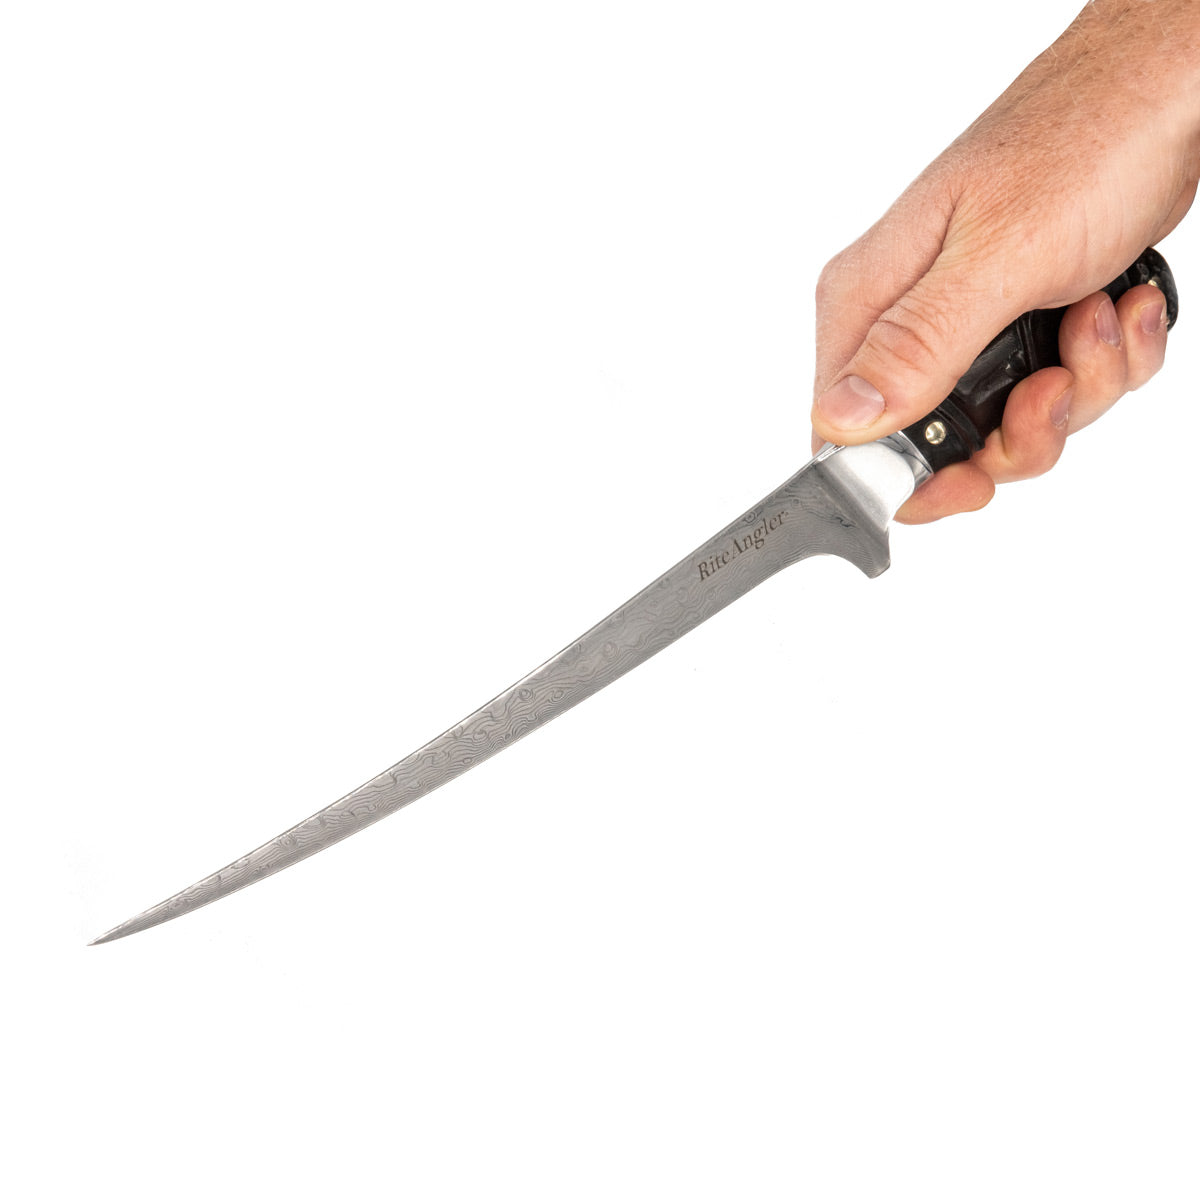 Rite Angler Damascus steel Fillet knife